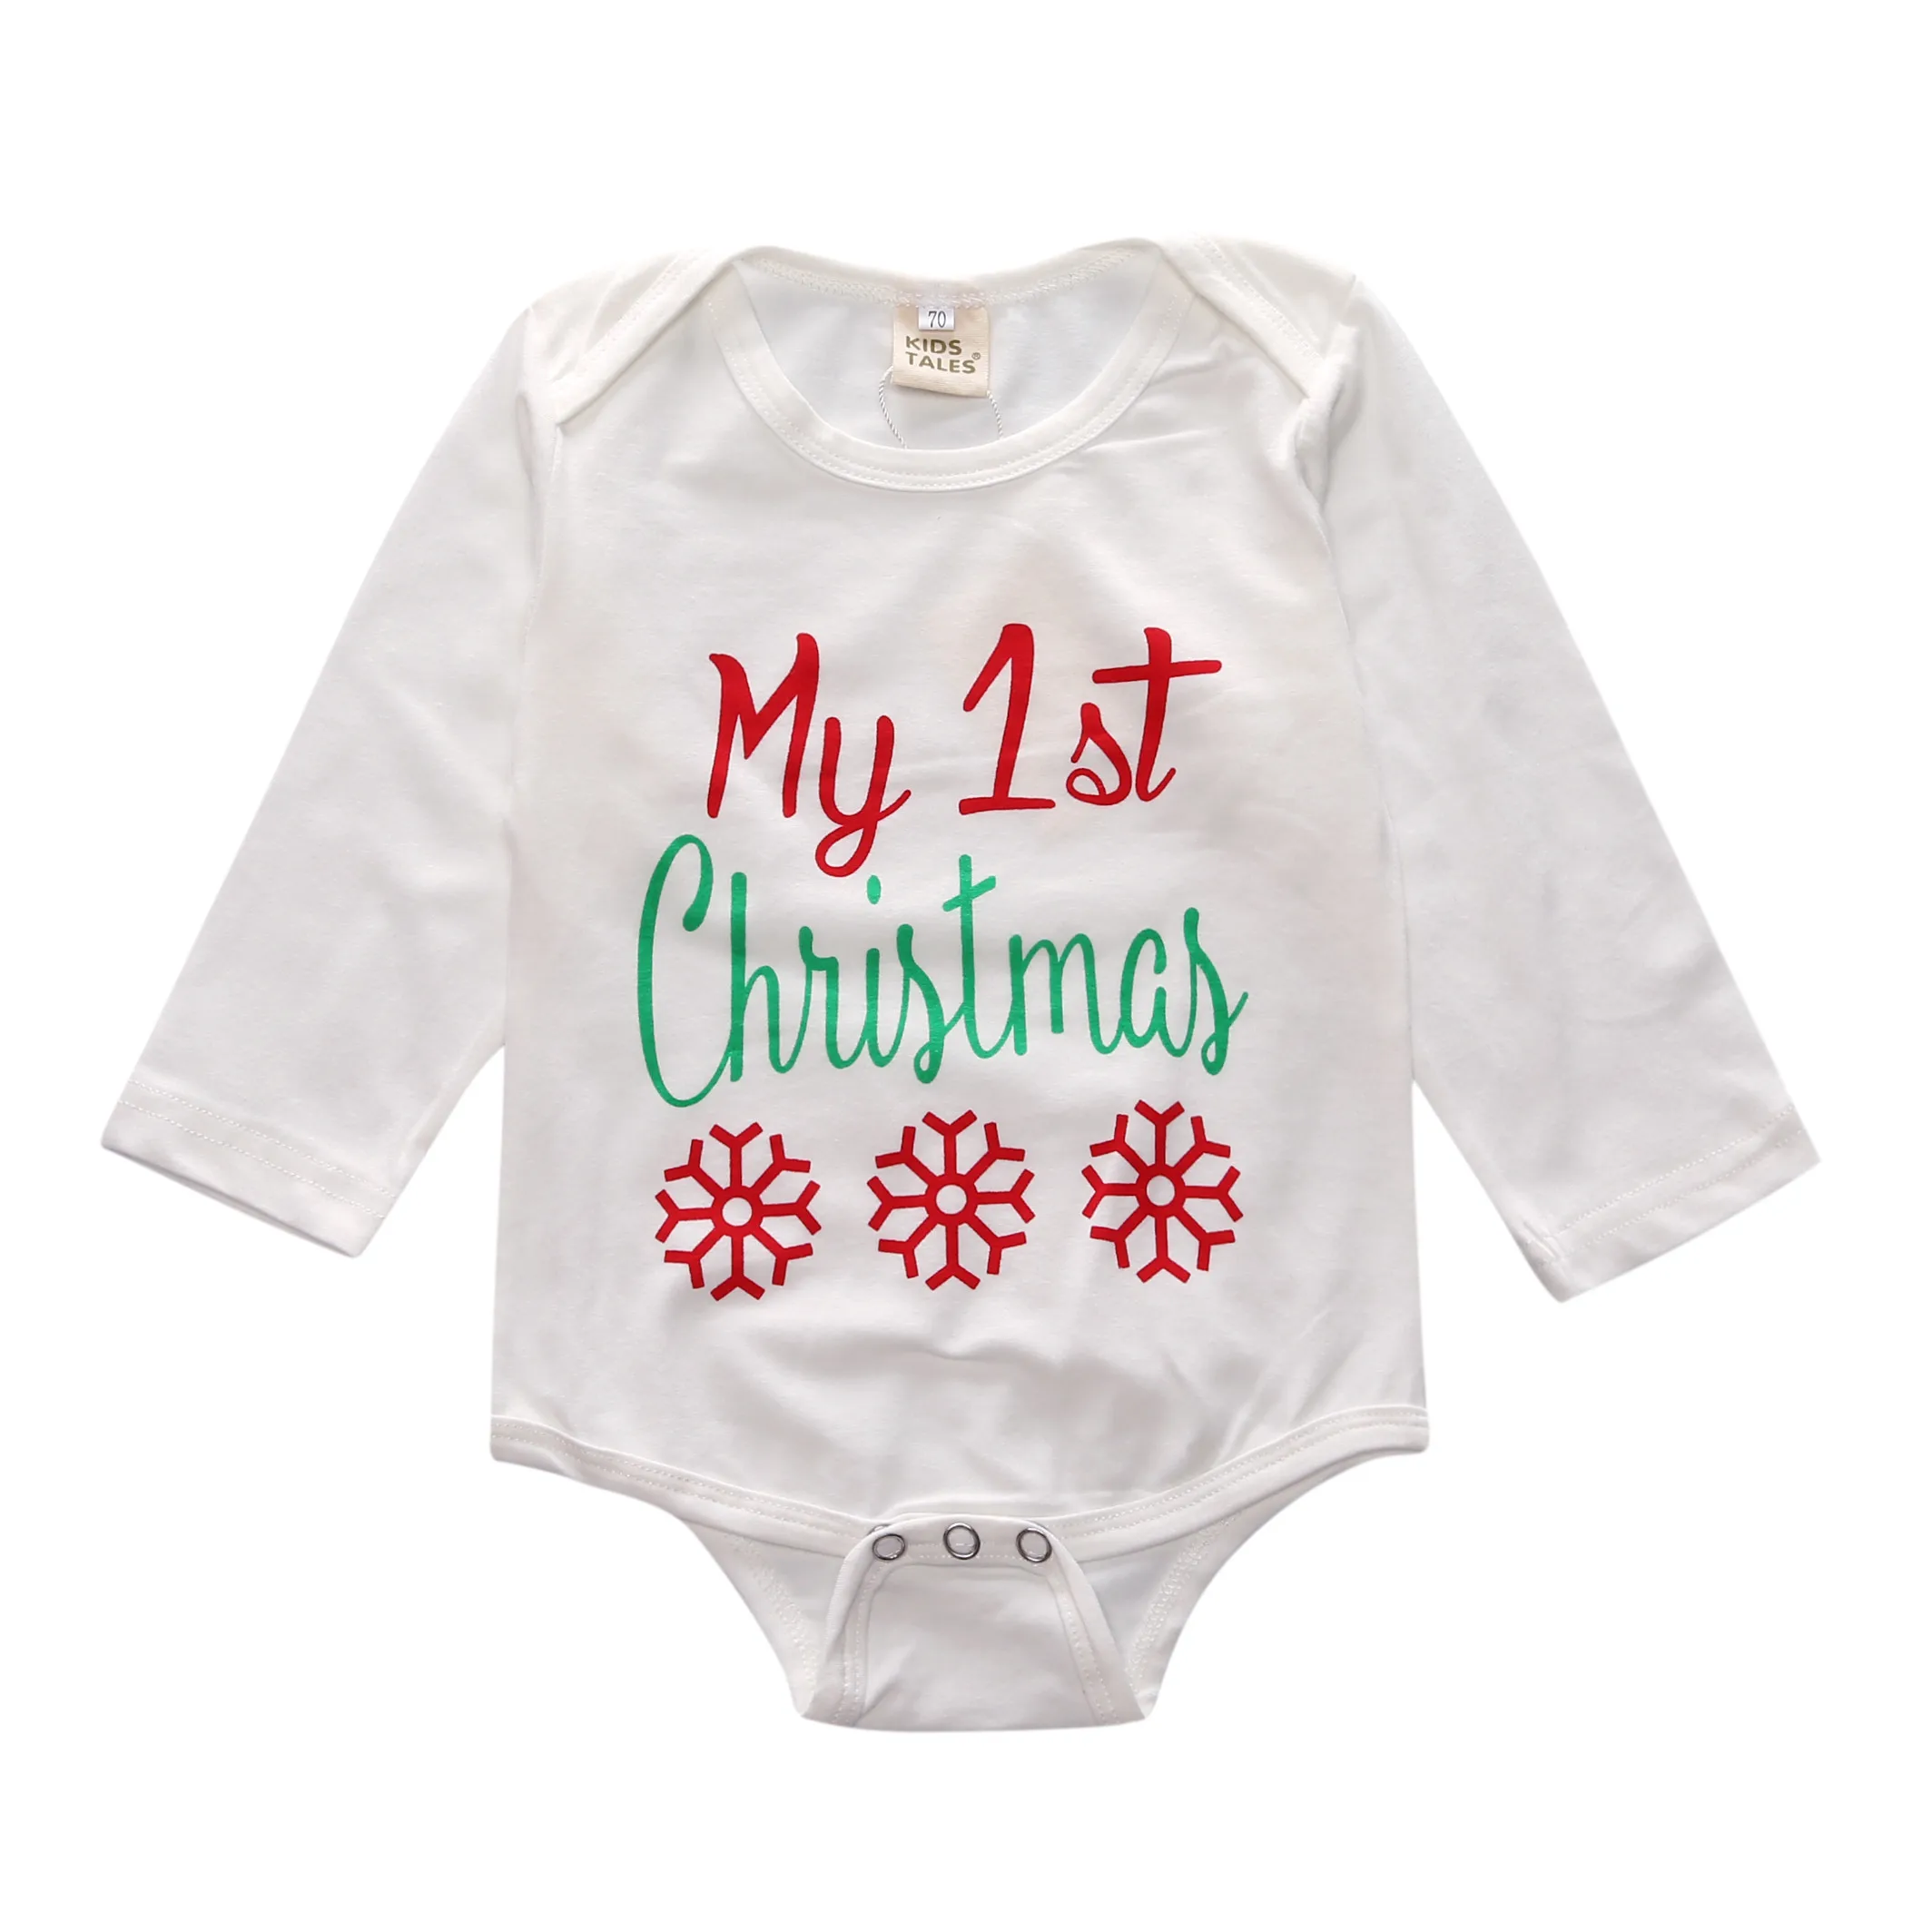 RY-185 комплект одежды для новорожденных, Рождественская Одежда для мальчиков и девочек, комбинезон+ штаны+ шапка+ повязка на голову, комплект одежды из 4 предметов для малышей на год